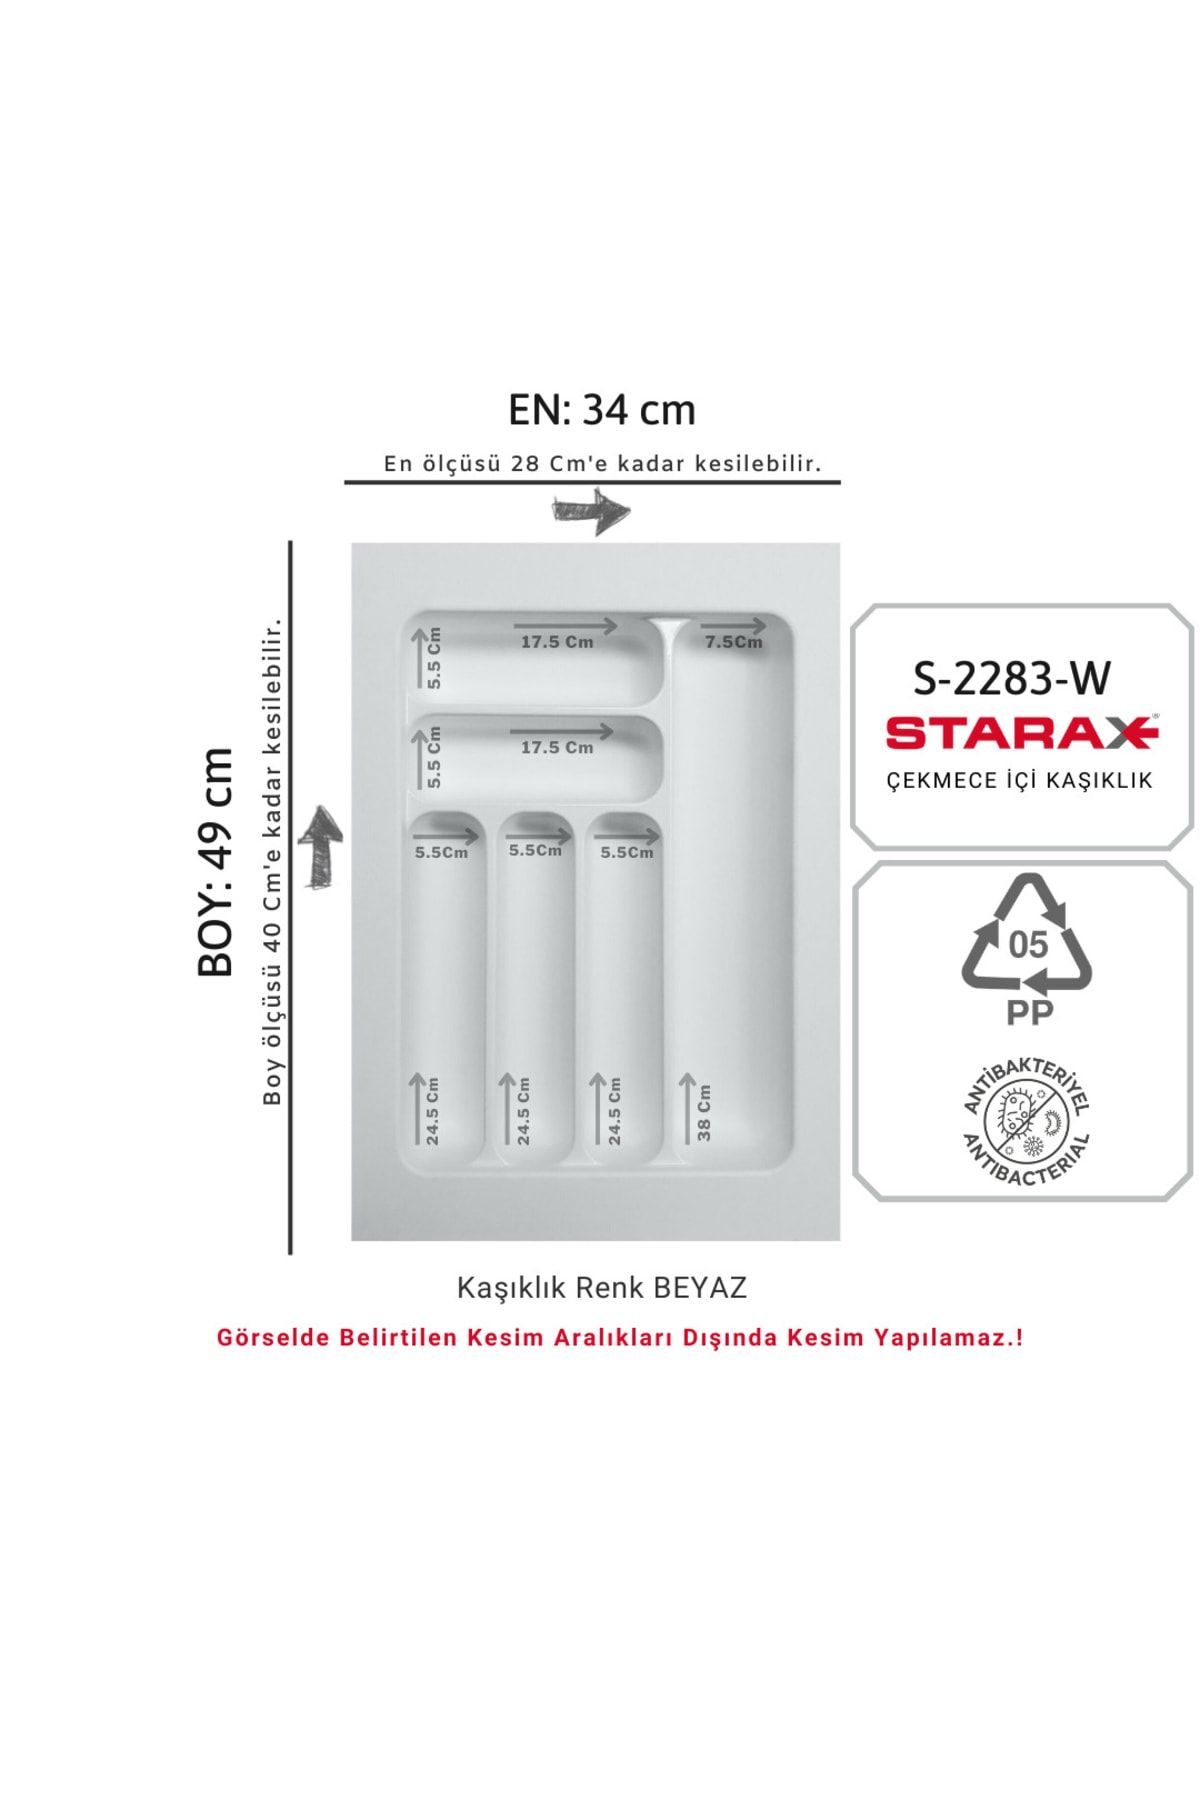 Starax S-2283-w Çekmece Içi Plastik Kaşıklık Beyaz En:34-28 D:49-40 Cm Arası Kesilebilir 6 Göz